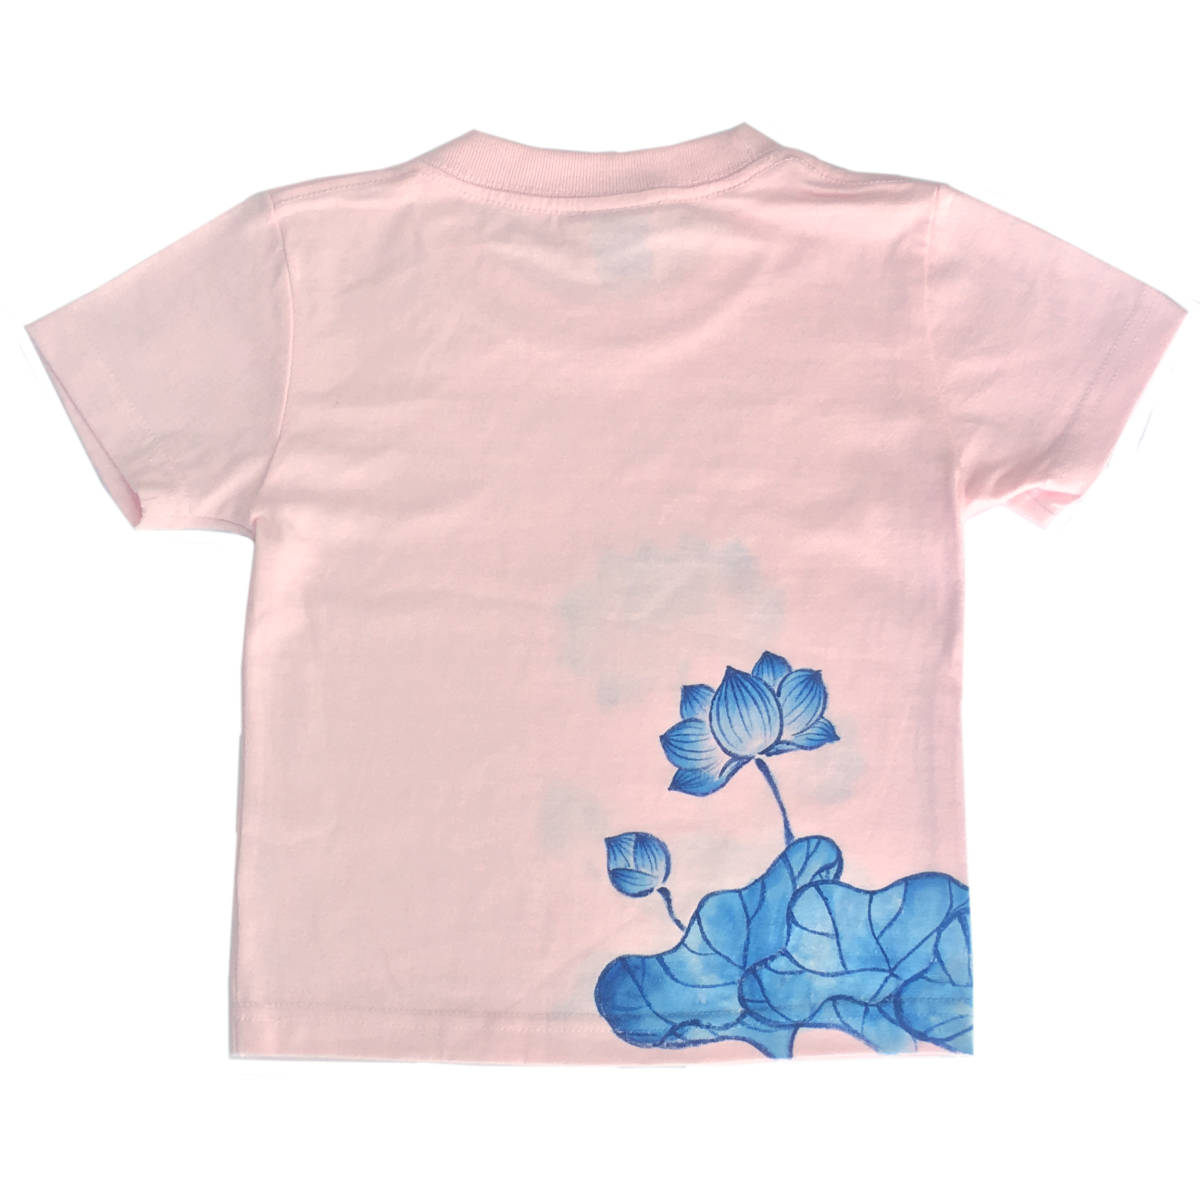 キッズ Tシャツ 120サイズ ピンク 蓮柄Tシャツ 手描きで描いた蓮の花柄Tシャツ 半袖 和柄 和風 レトロ ハンドメイド